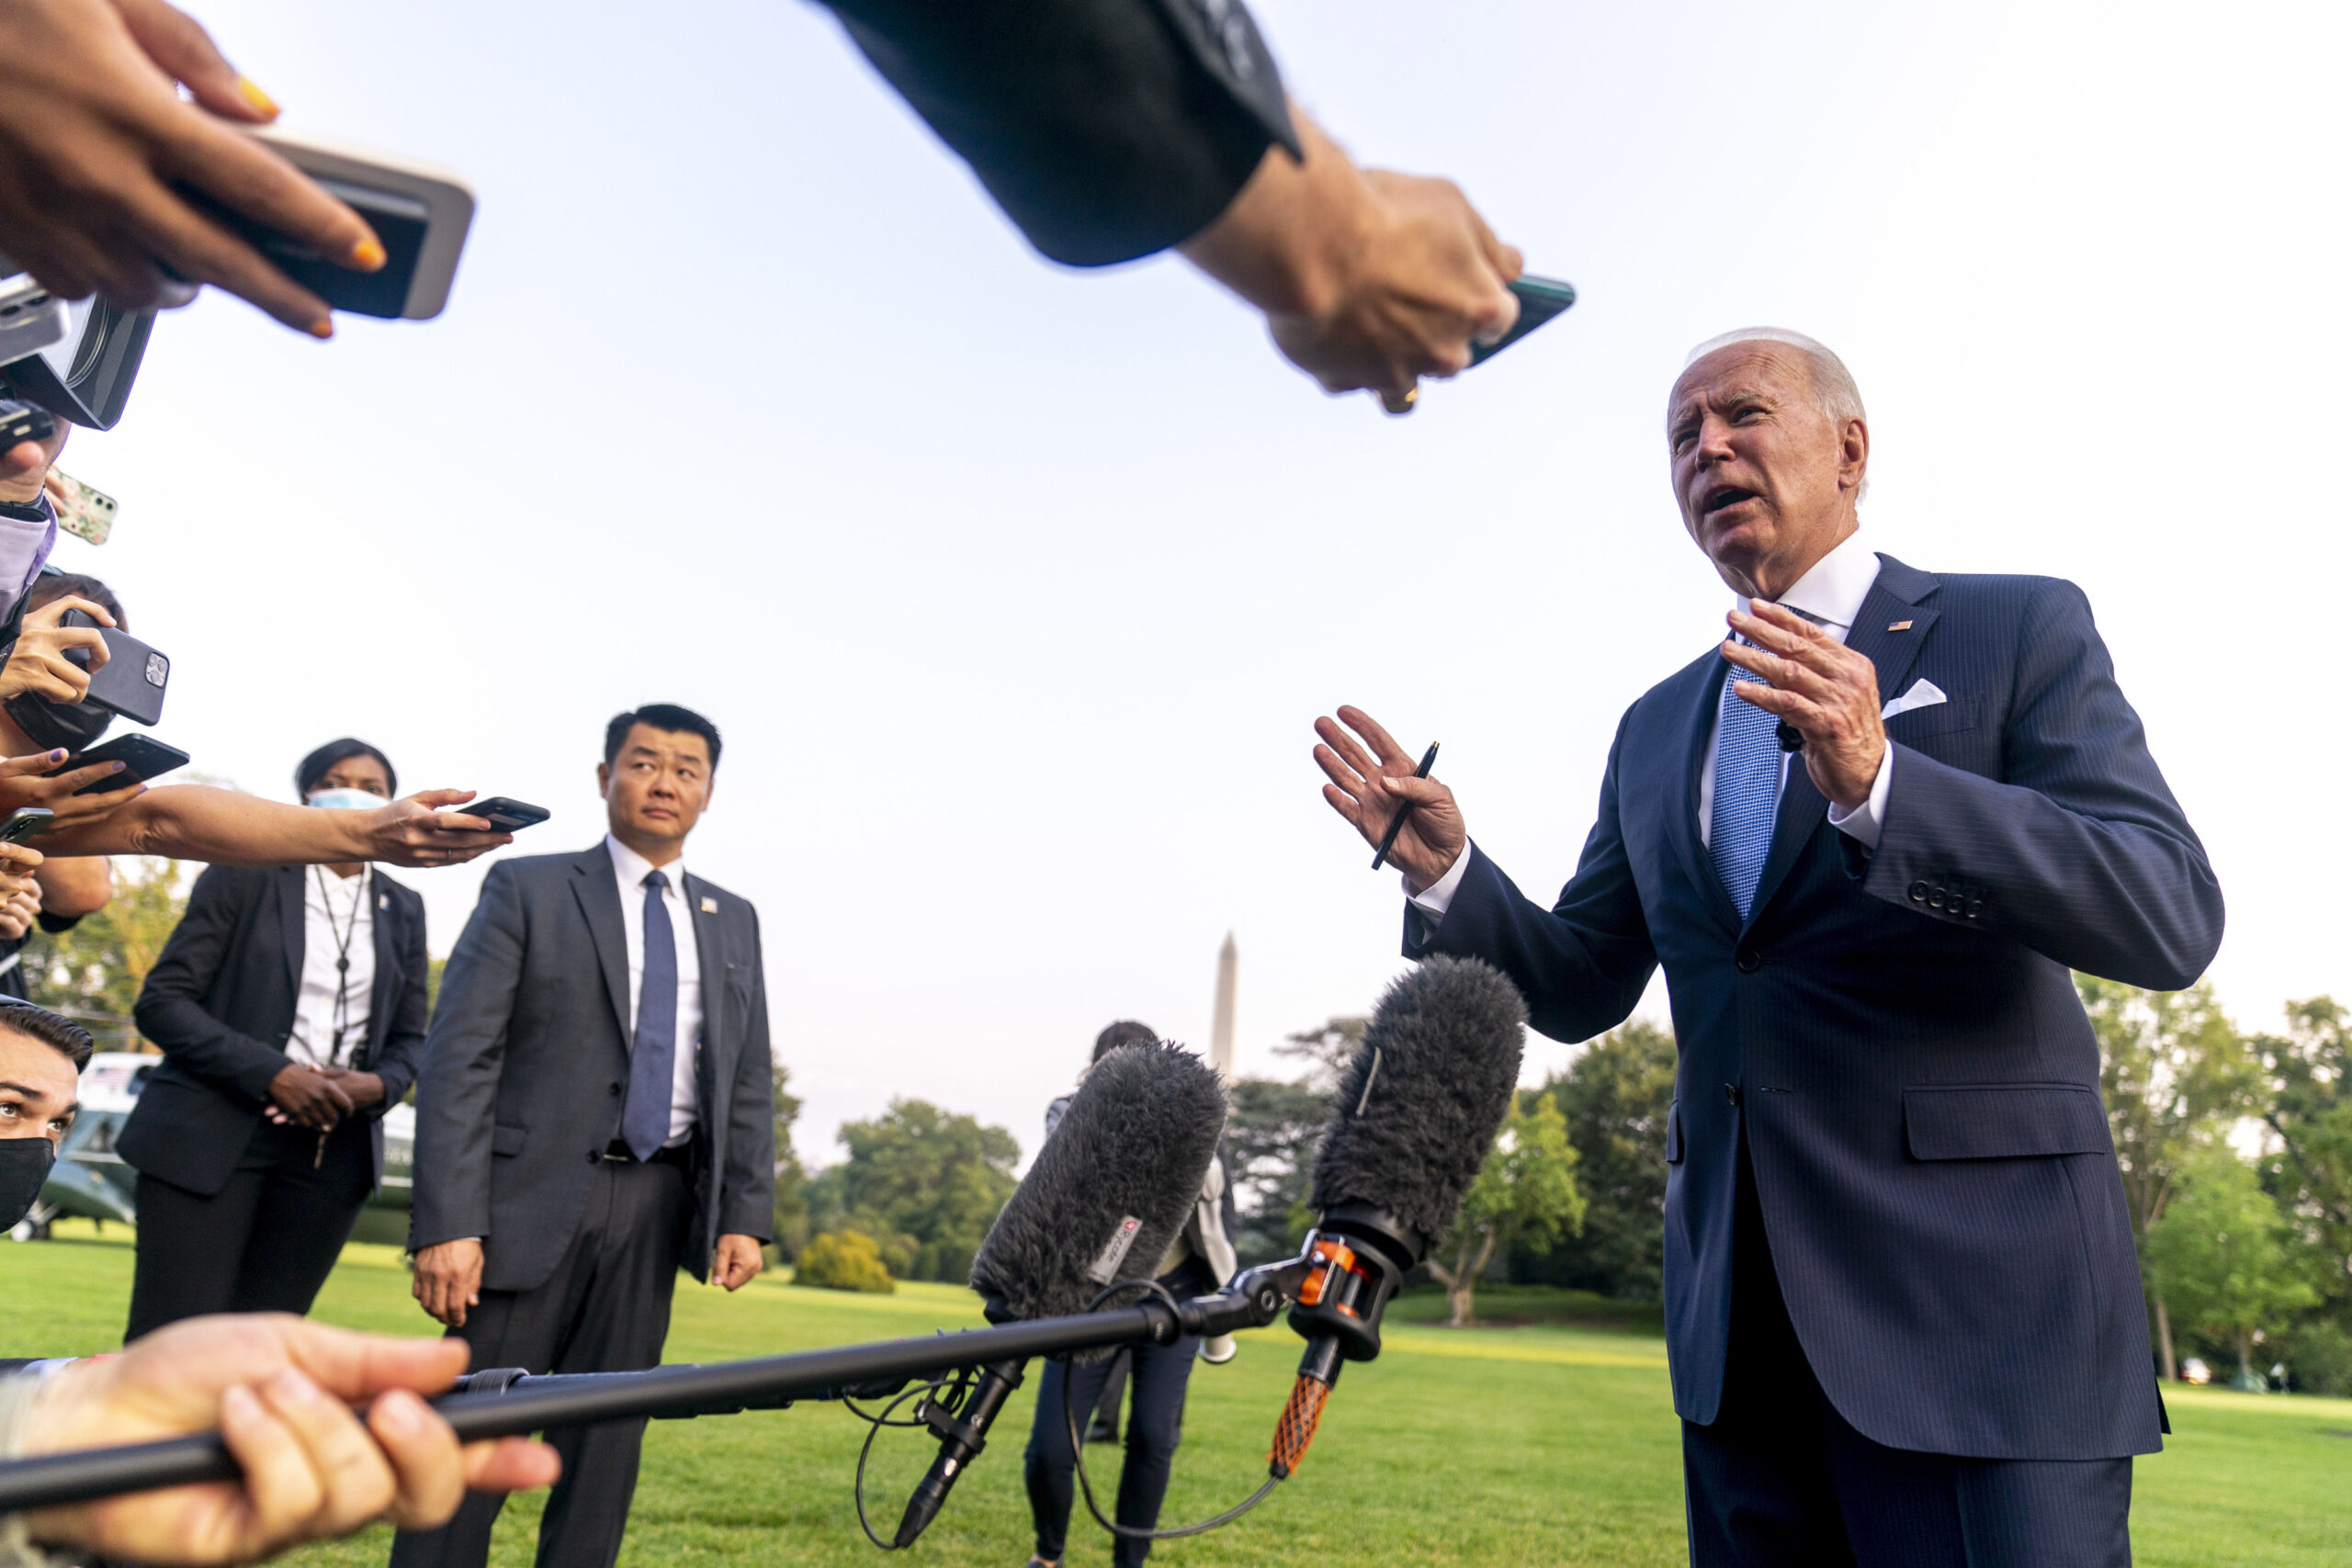 President Joe Biden speaks to members of the media